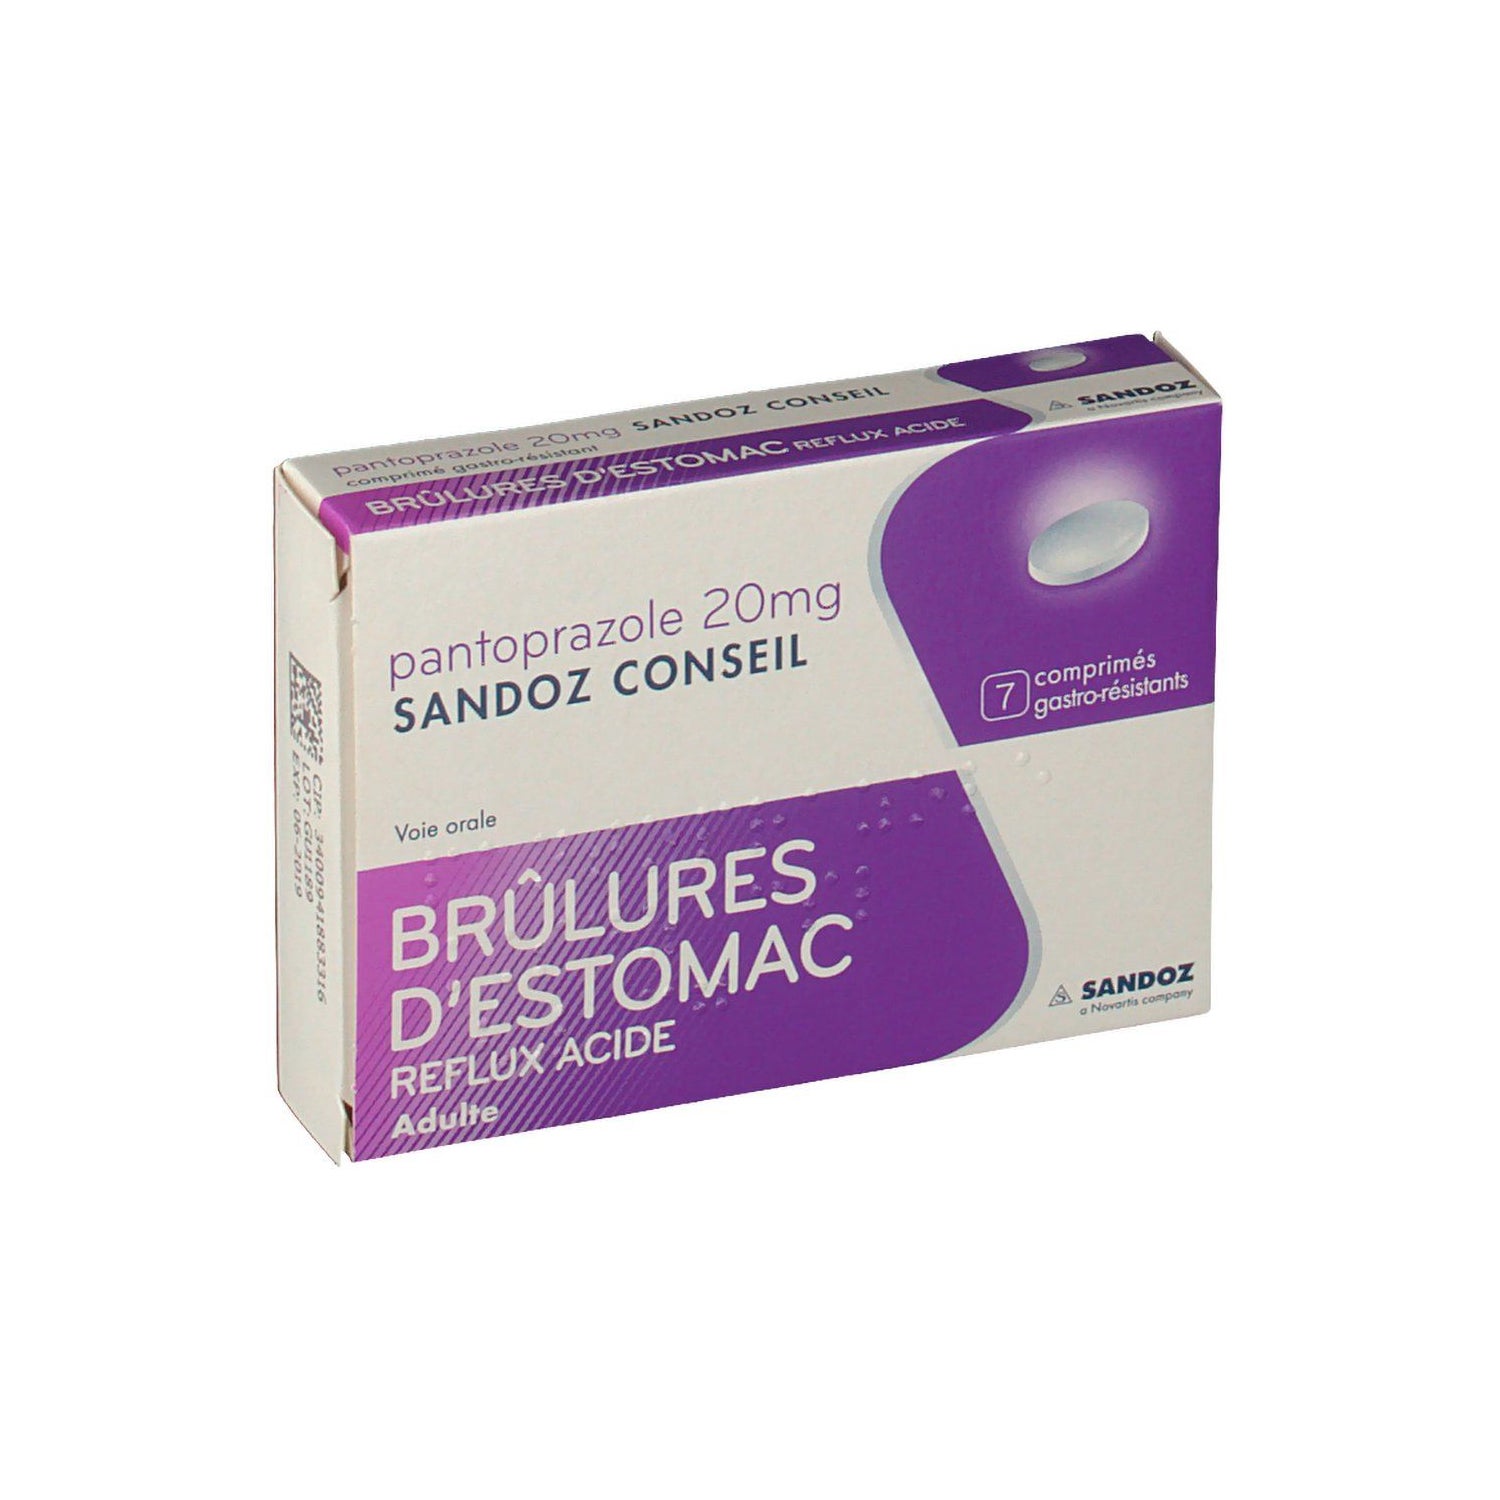 Sandoz Conseil Pantoprazole Brulures D Estomac mg 7 Comprimes Docmorris France